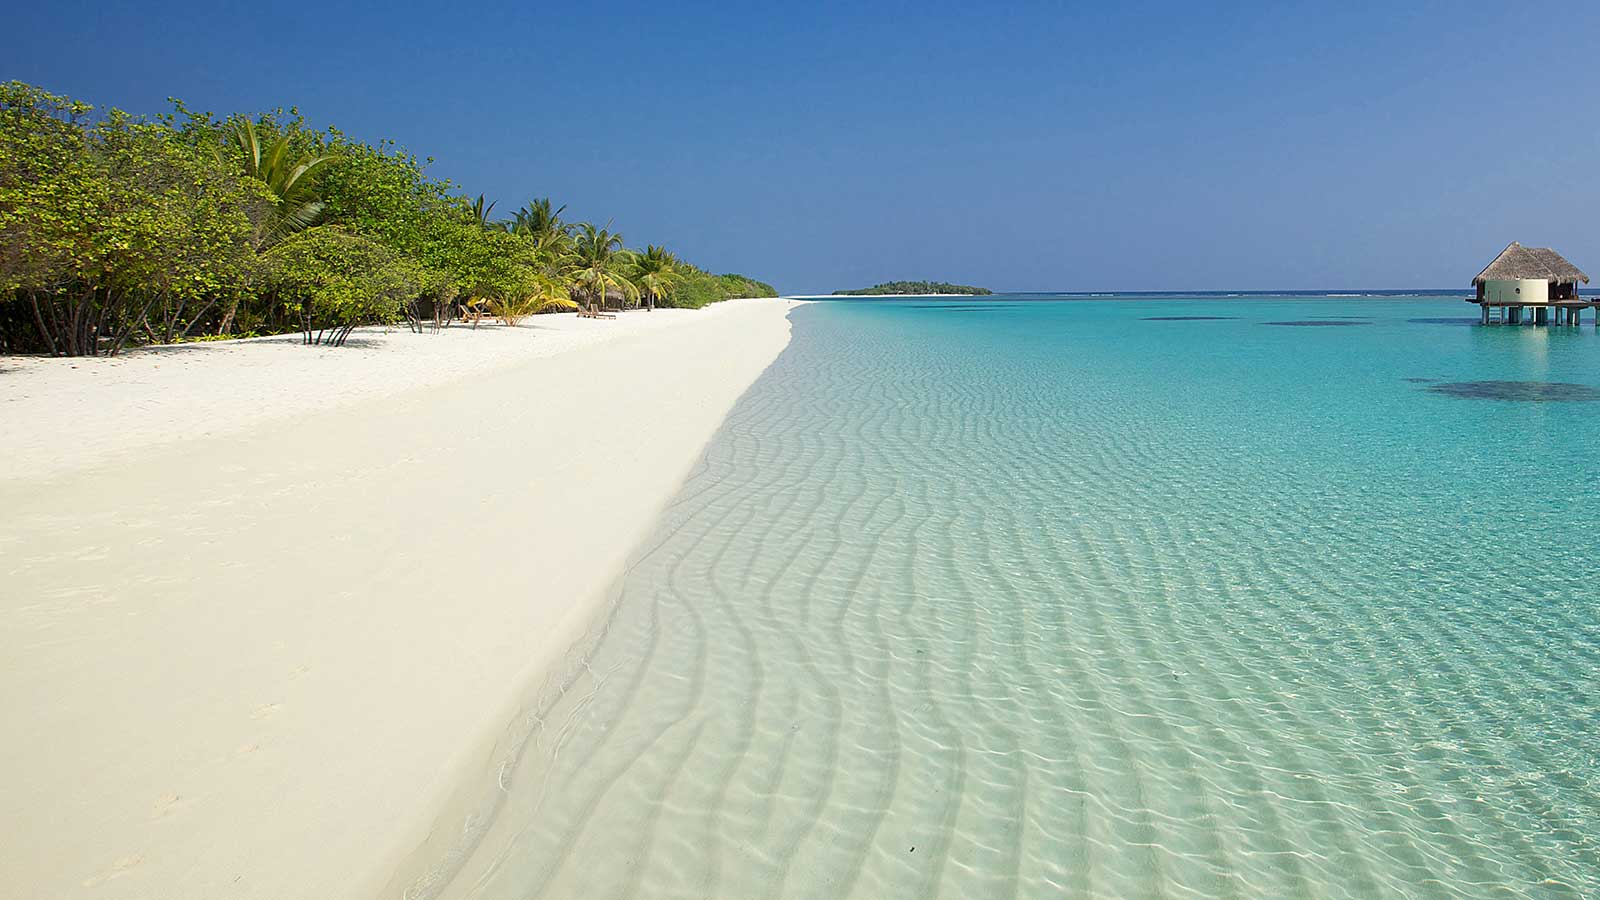 Лучшие пляжи Маврикия